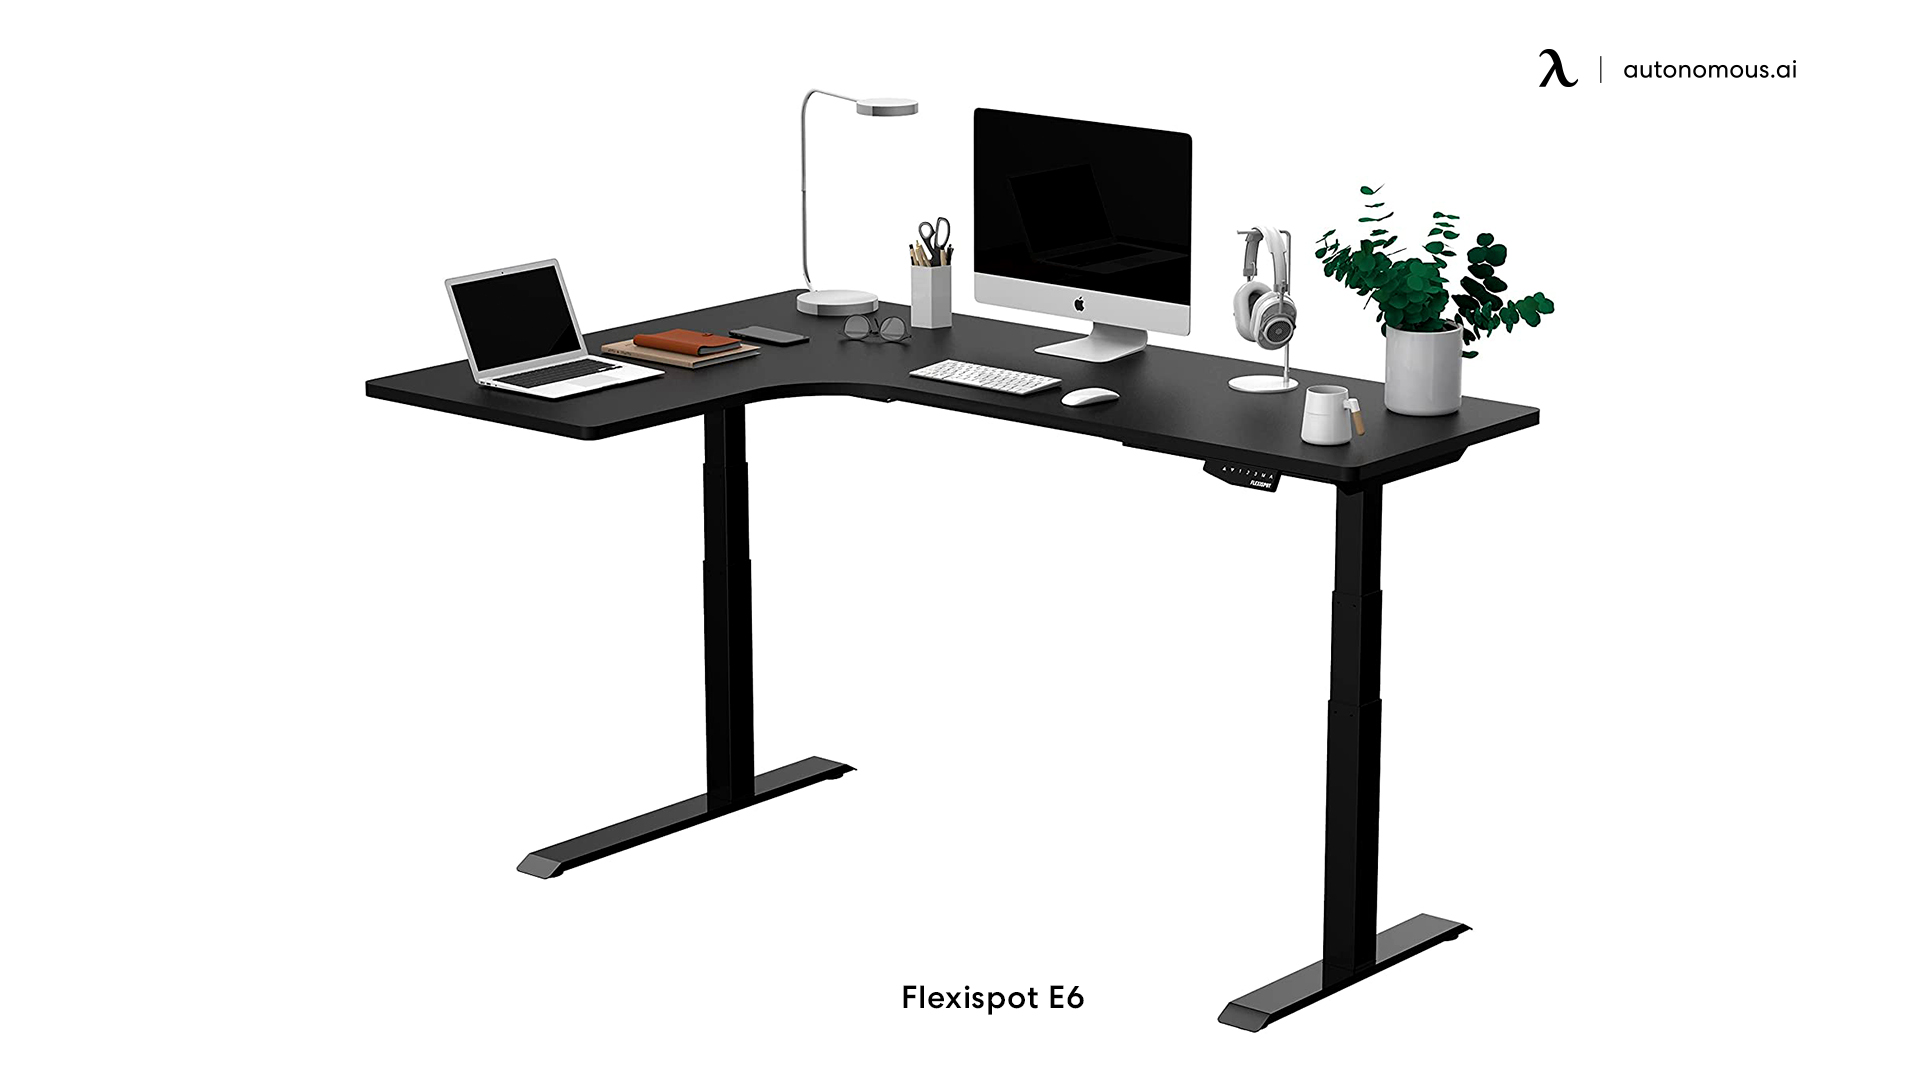 Flexispot E6 white small desk